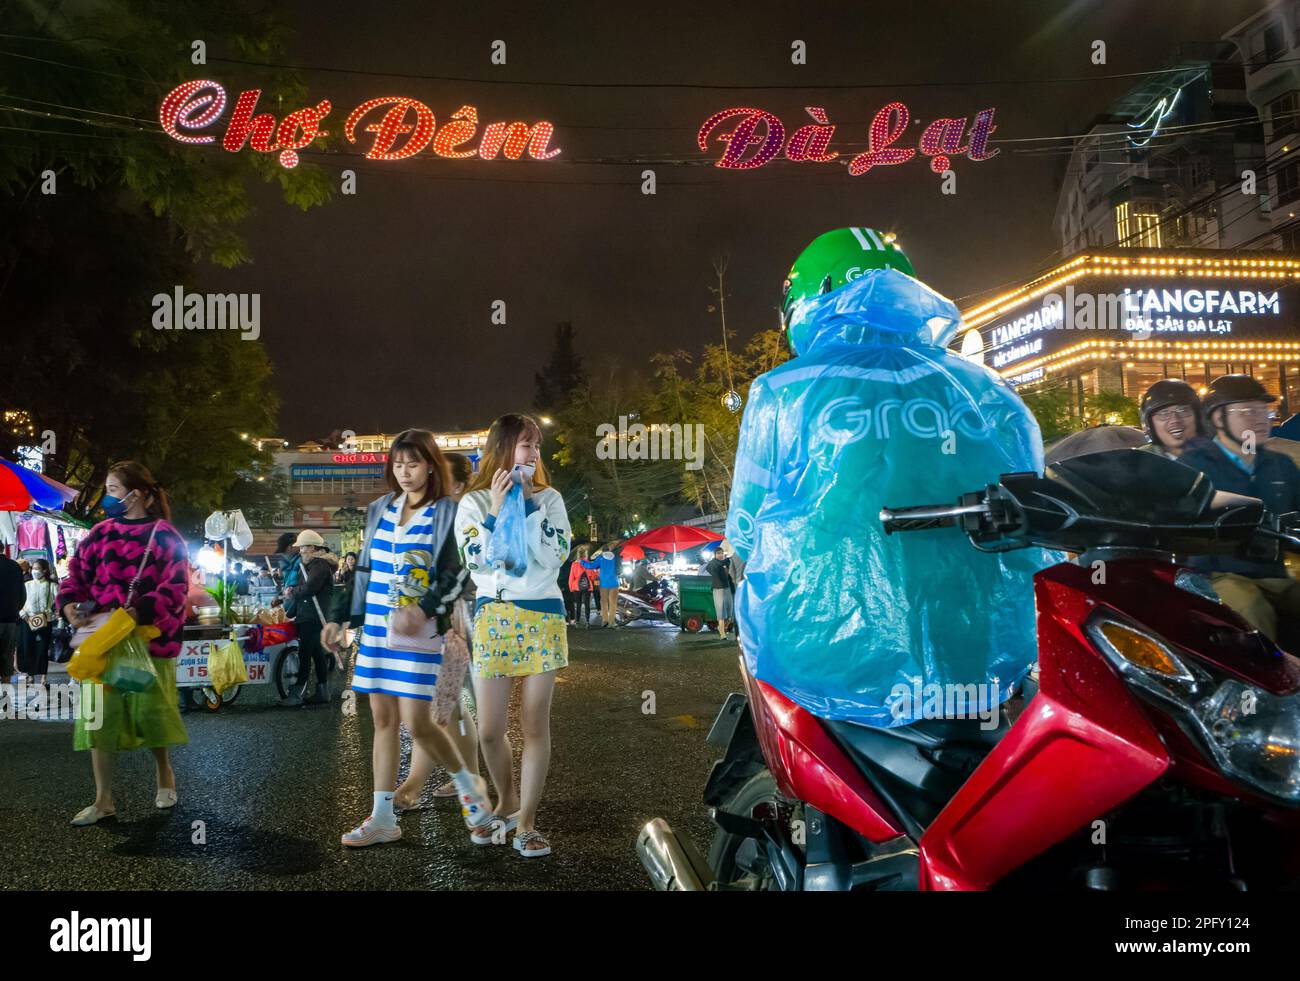 Zwei junge vietnamesische Mädchen gehen in Richtung eines Taxifahrers mit dem Motorrad, inmitten des geschäftigen Nachtmarkts in Dalat, Vietnam. Stockfoto